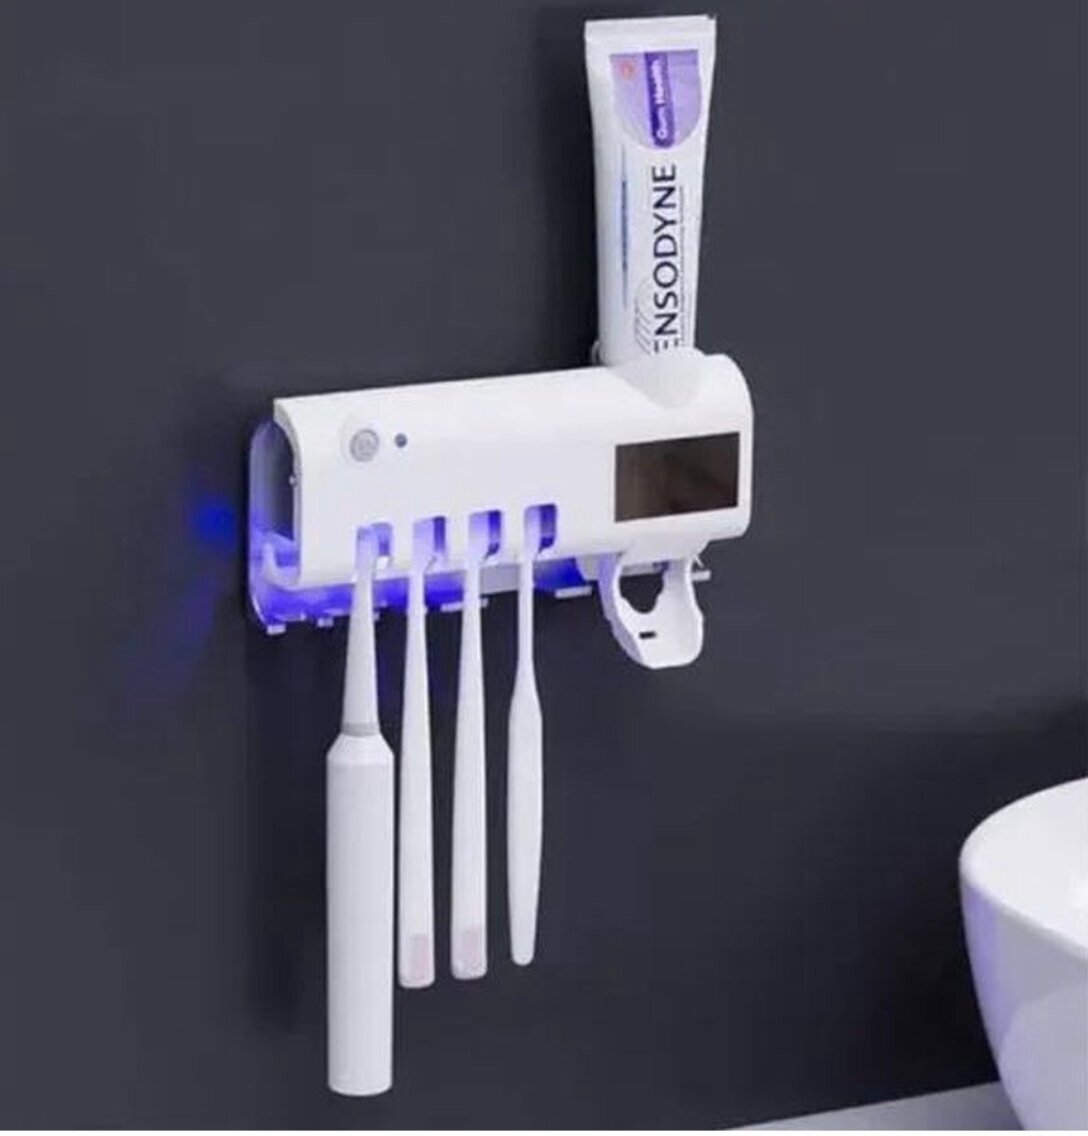 Практичный дозатор-держатель для зубных щеток паст и предметов. С УФ-стерилизатором